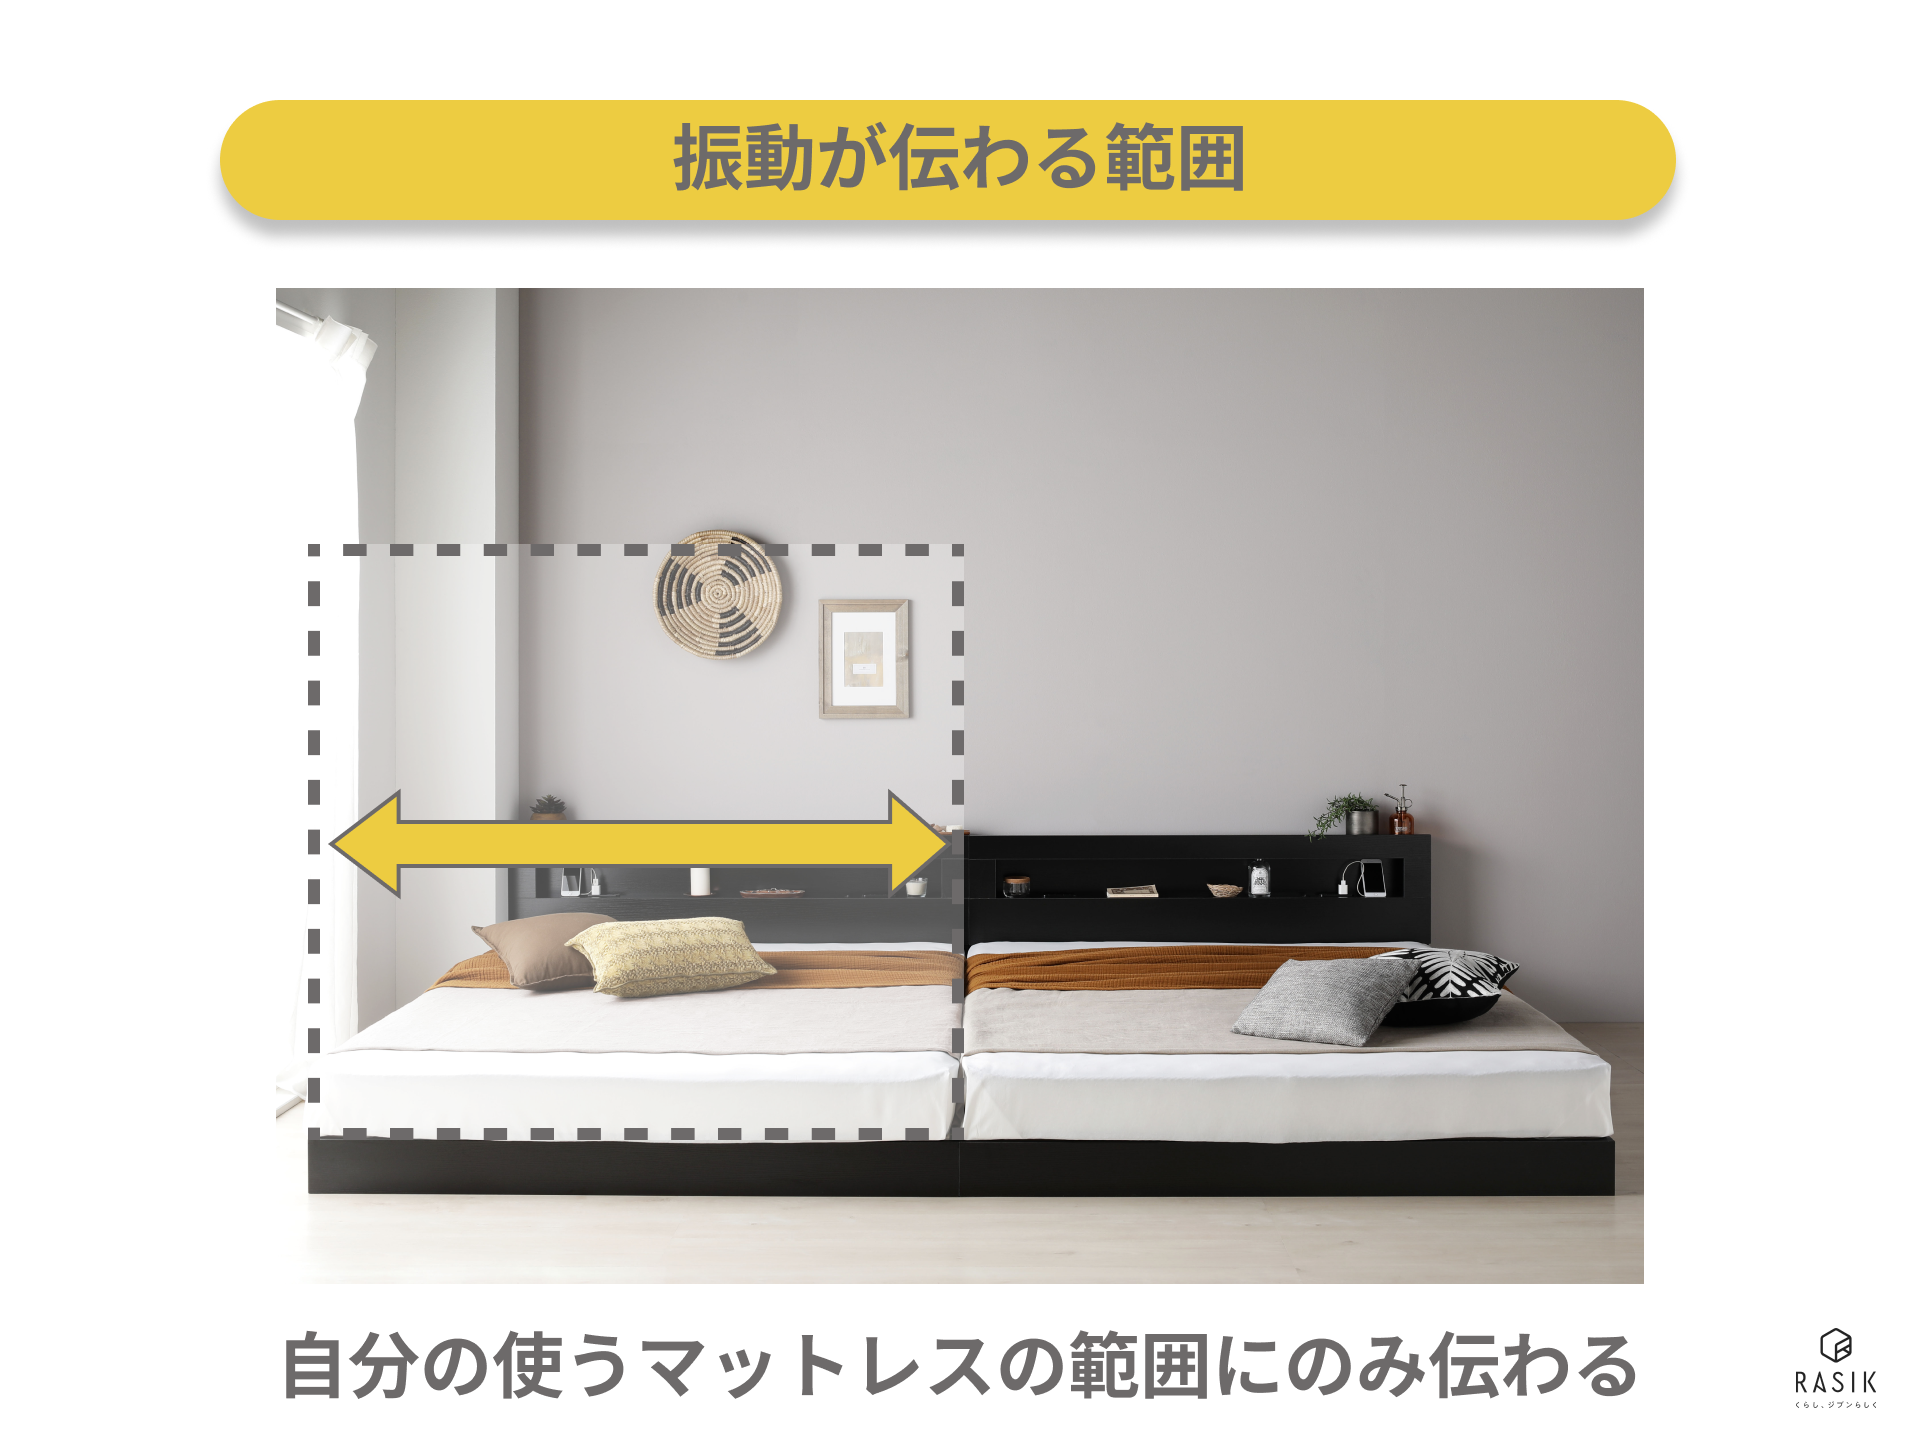 ベッドを2台設置した際の振動範囲を示した画像